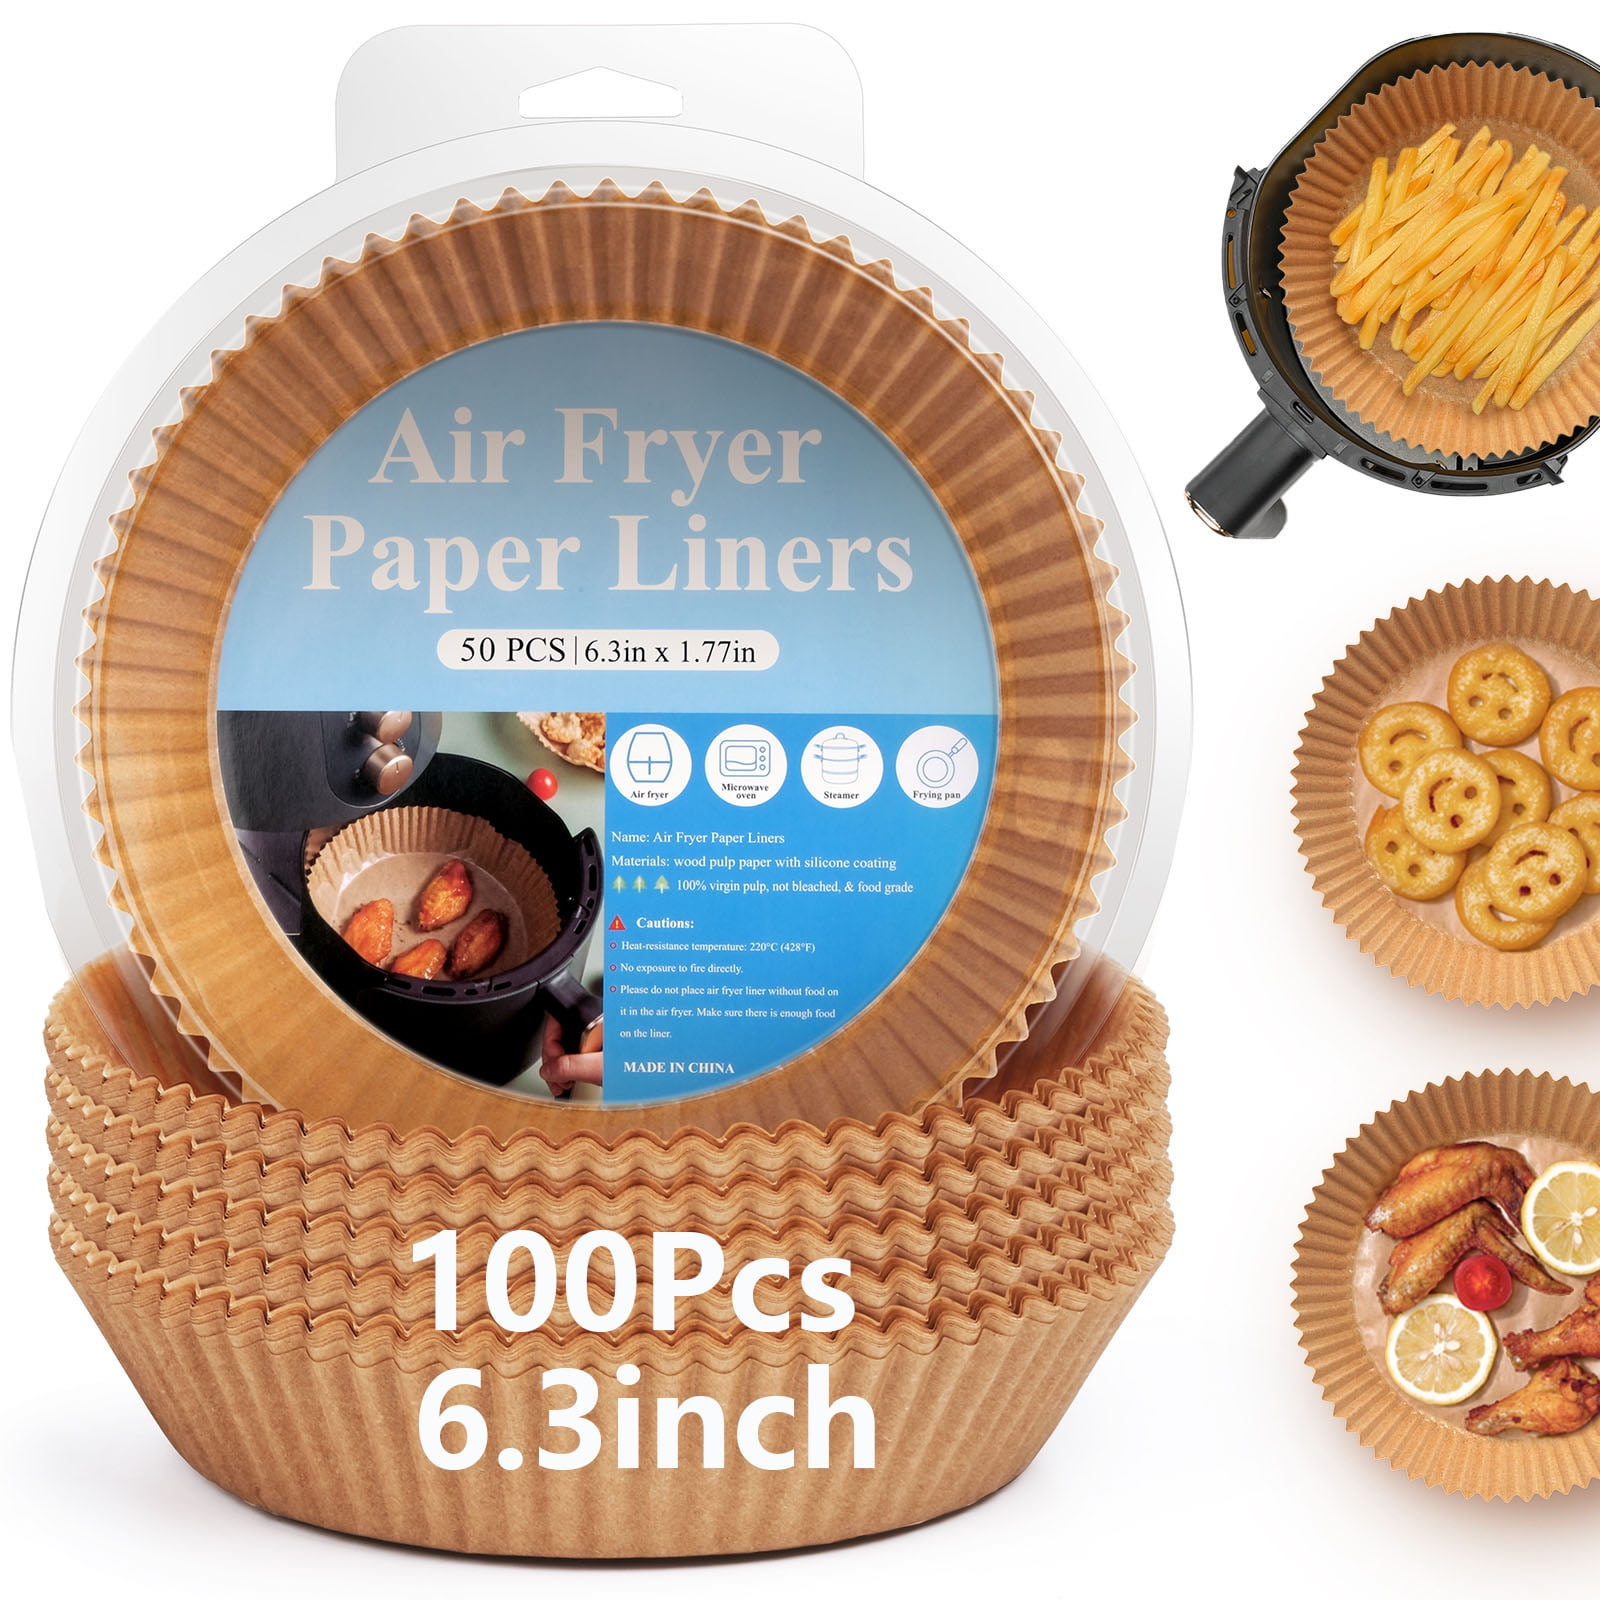 Air Fryer Parchment Paper Liners- 450PCS Air Fryer Paper Liners